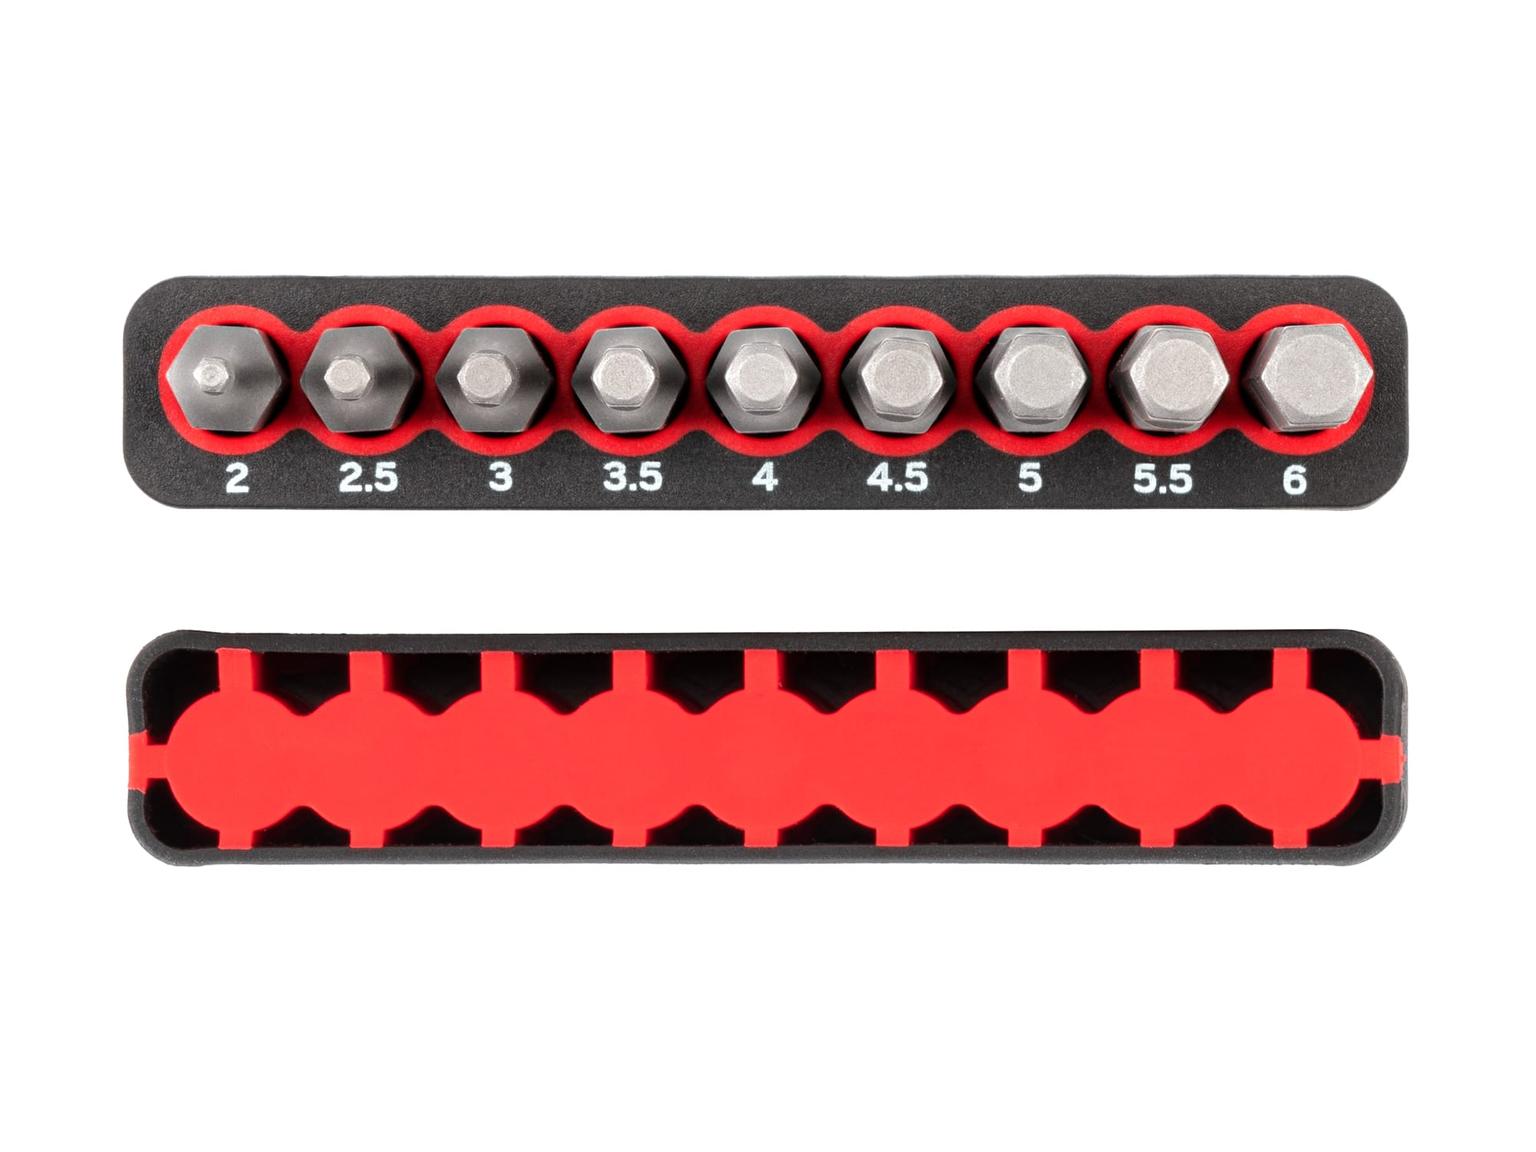 TEKTON DZX93002-T 1/4 Inch Metric Hex Bit Set with Rail, 9-Piece (2-6 mm)